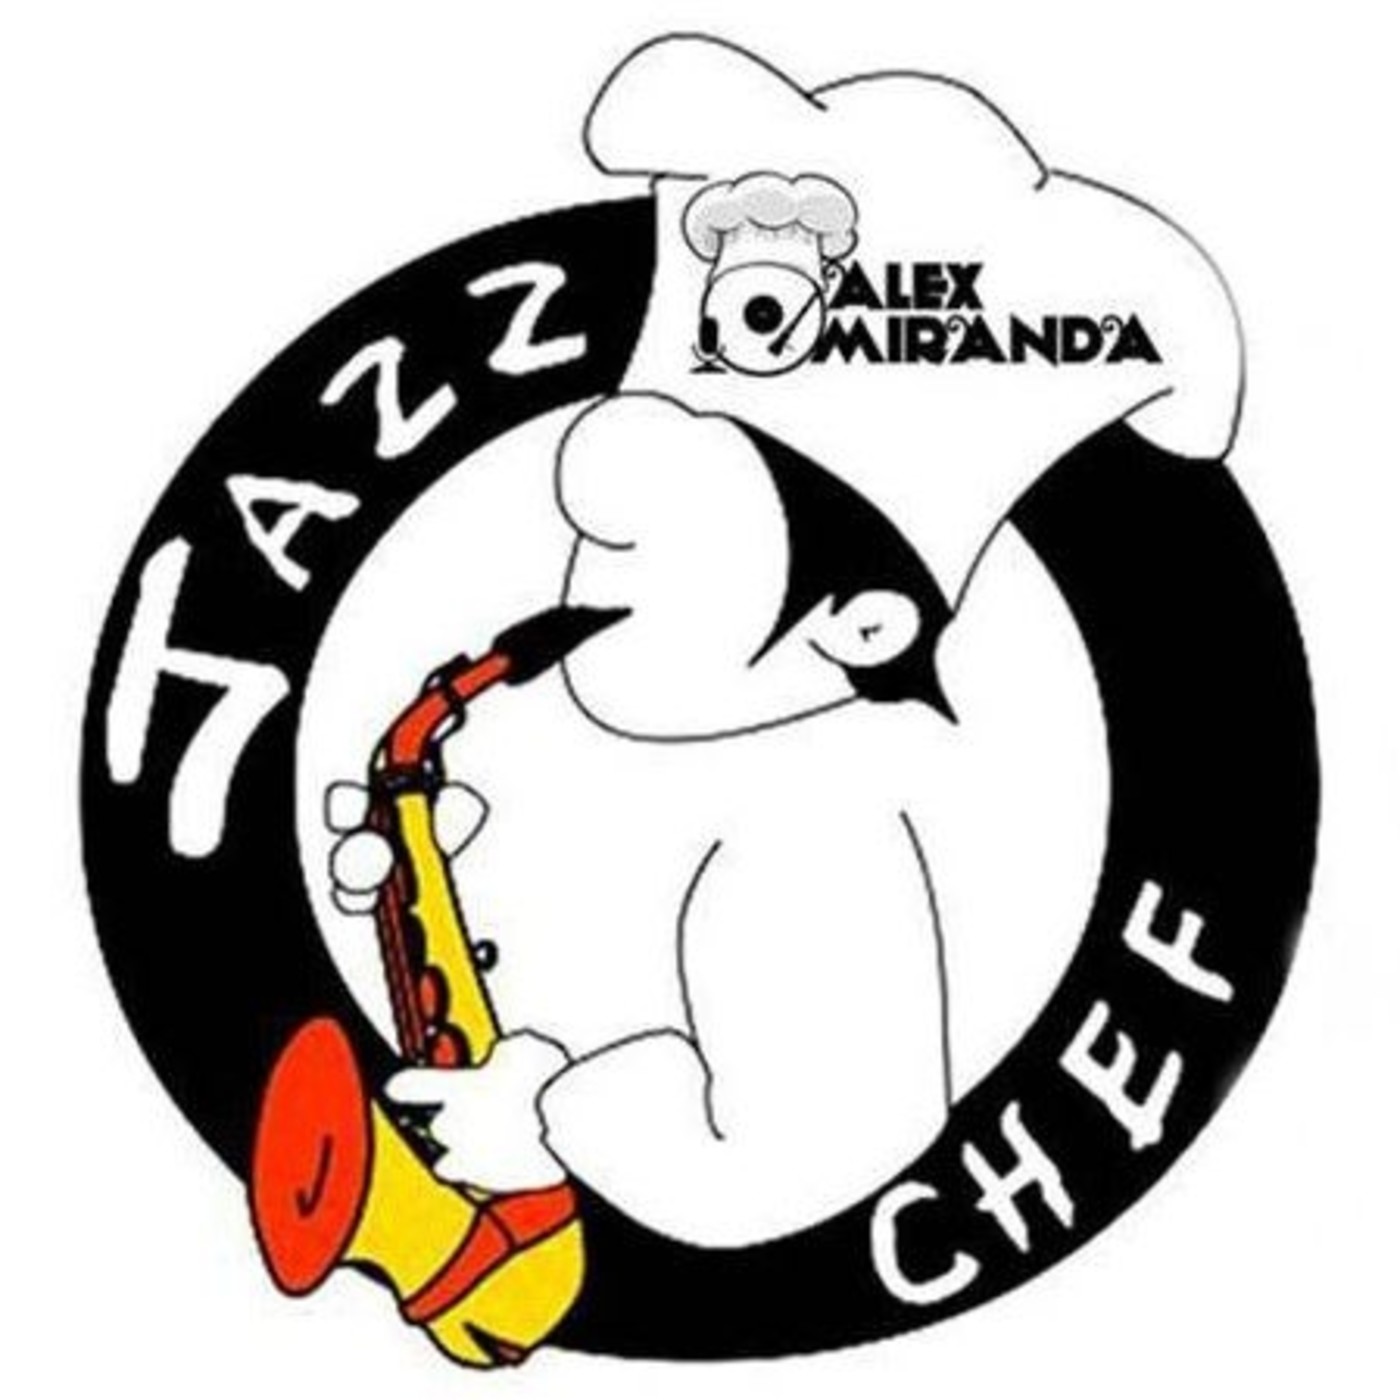 2018/01/27- A la sazón del Jazz